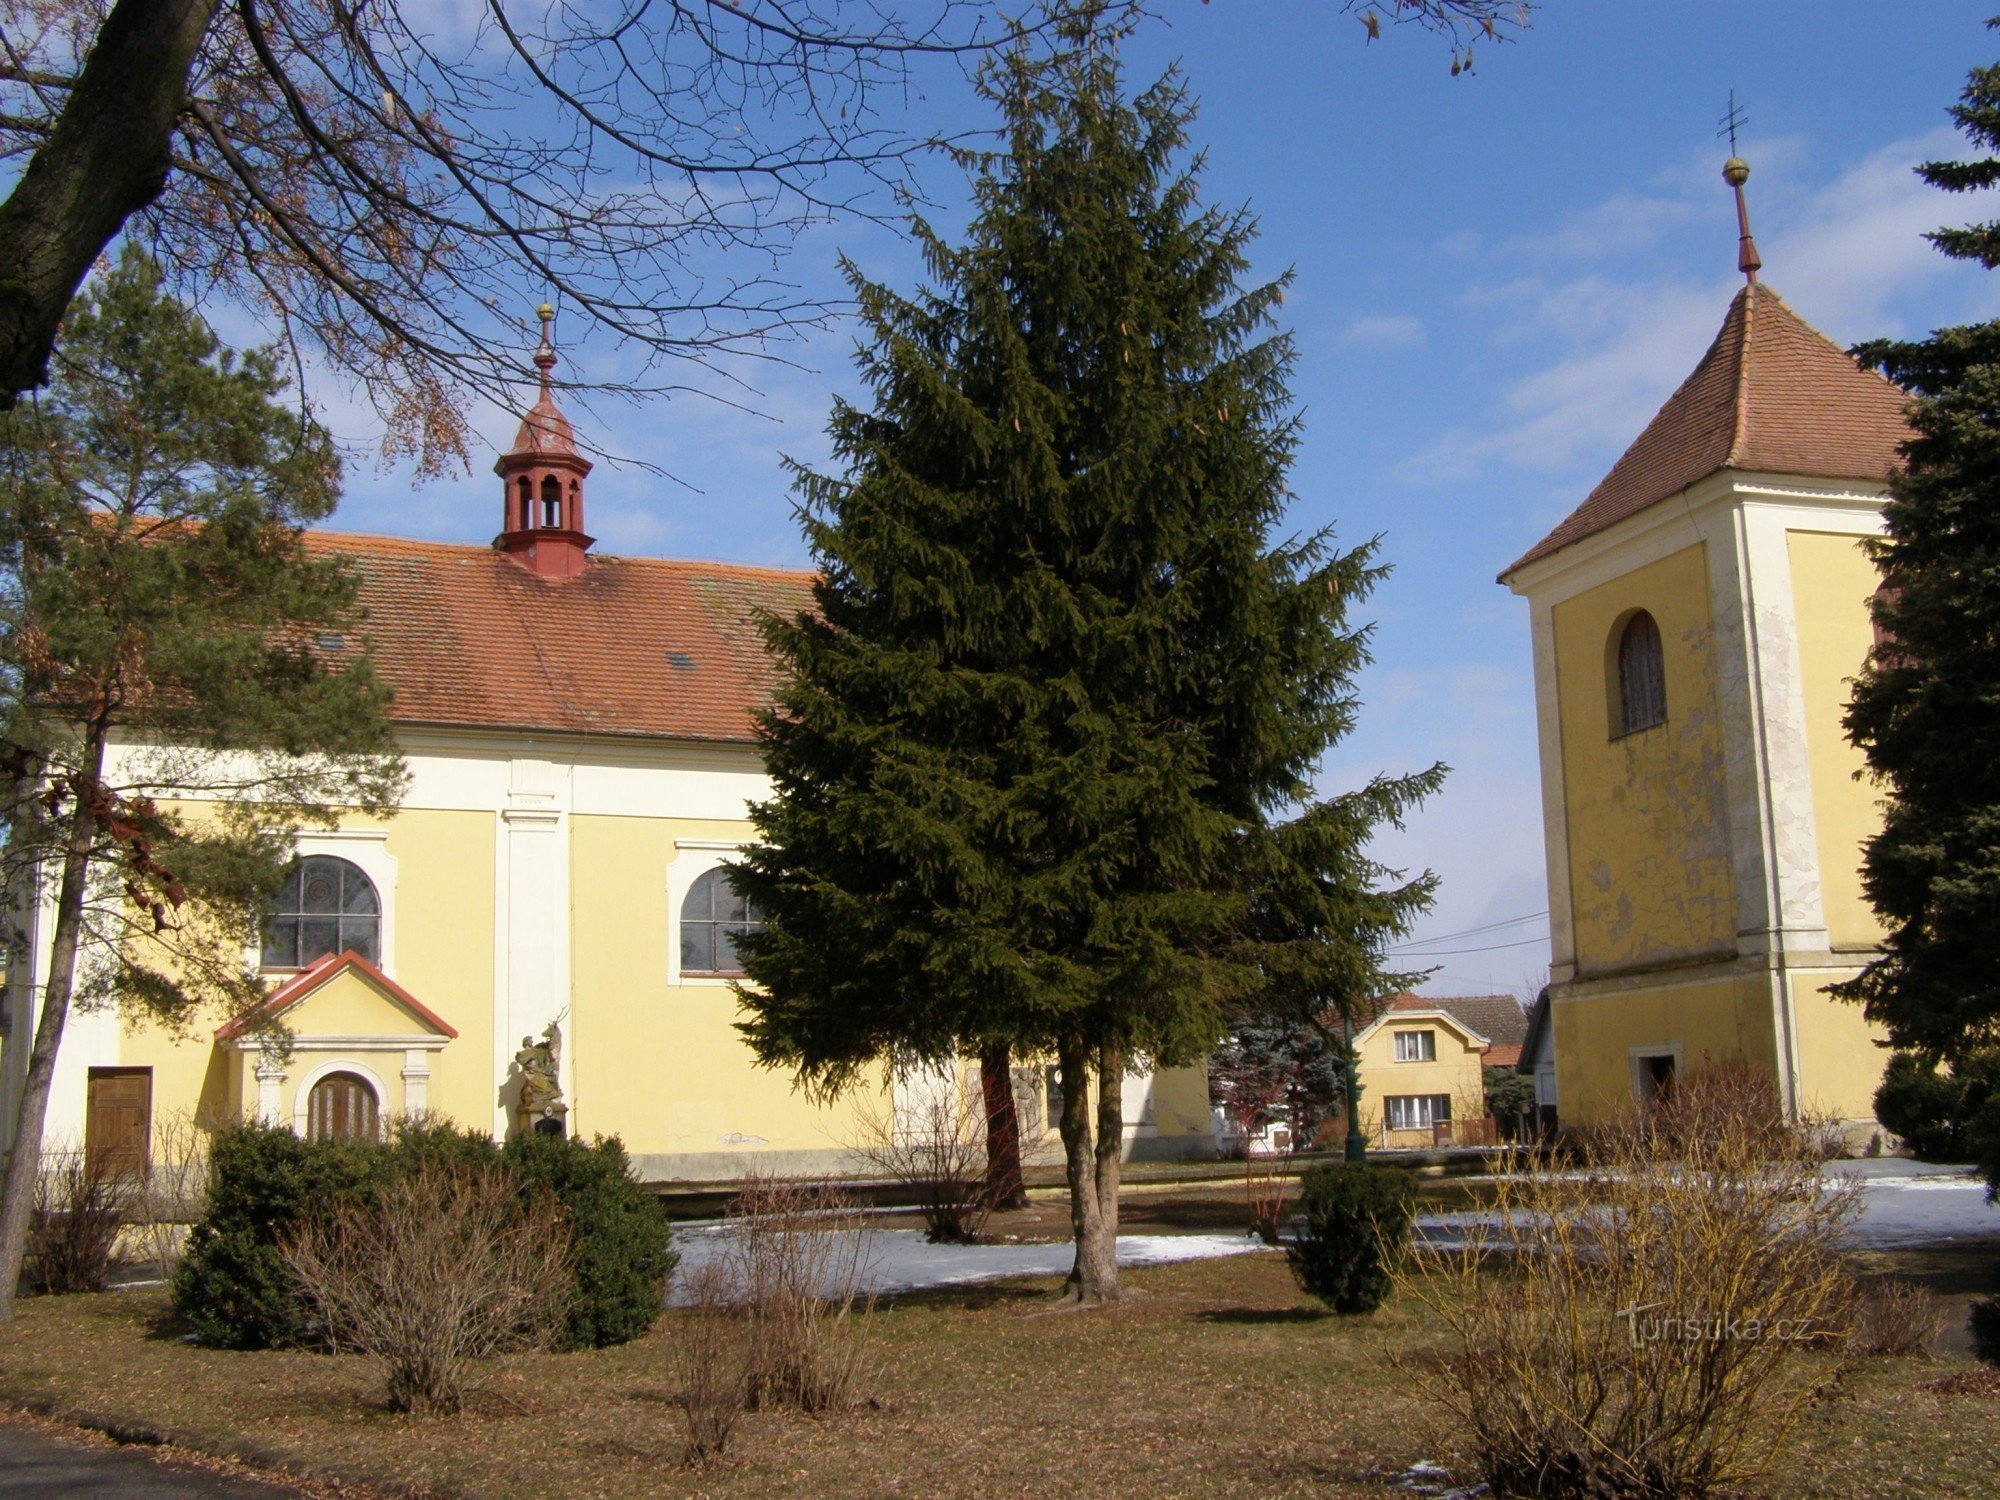 Lovčice - Église de St. Barthélemy avec le beffroi